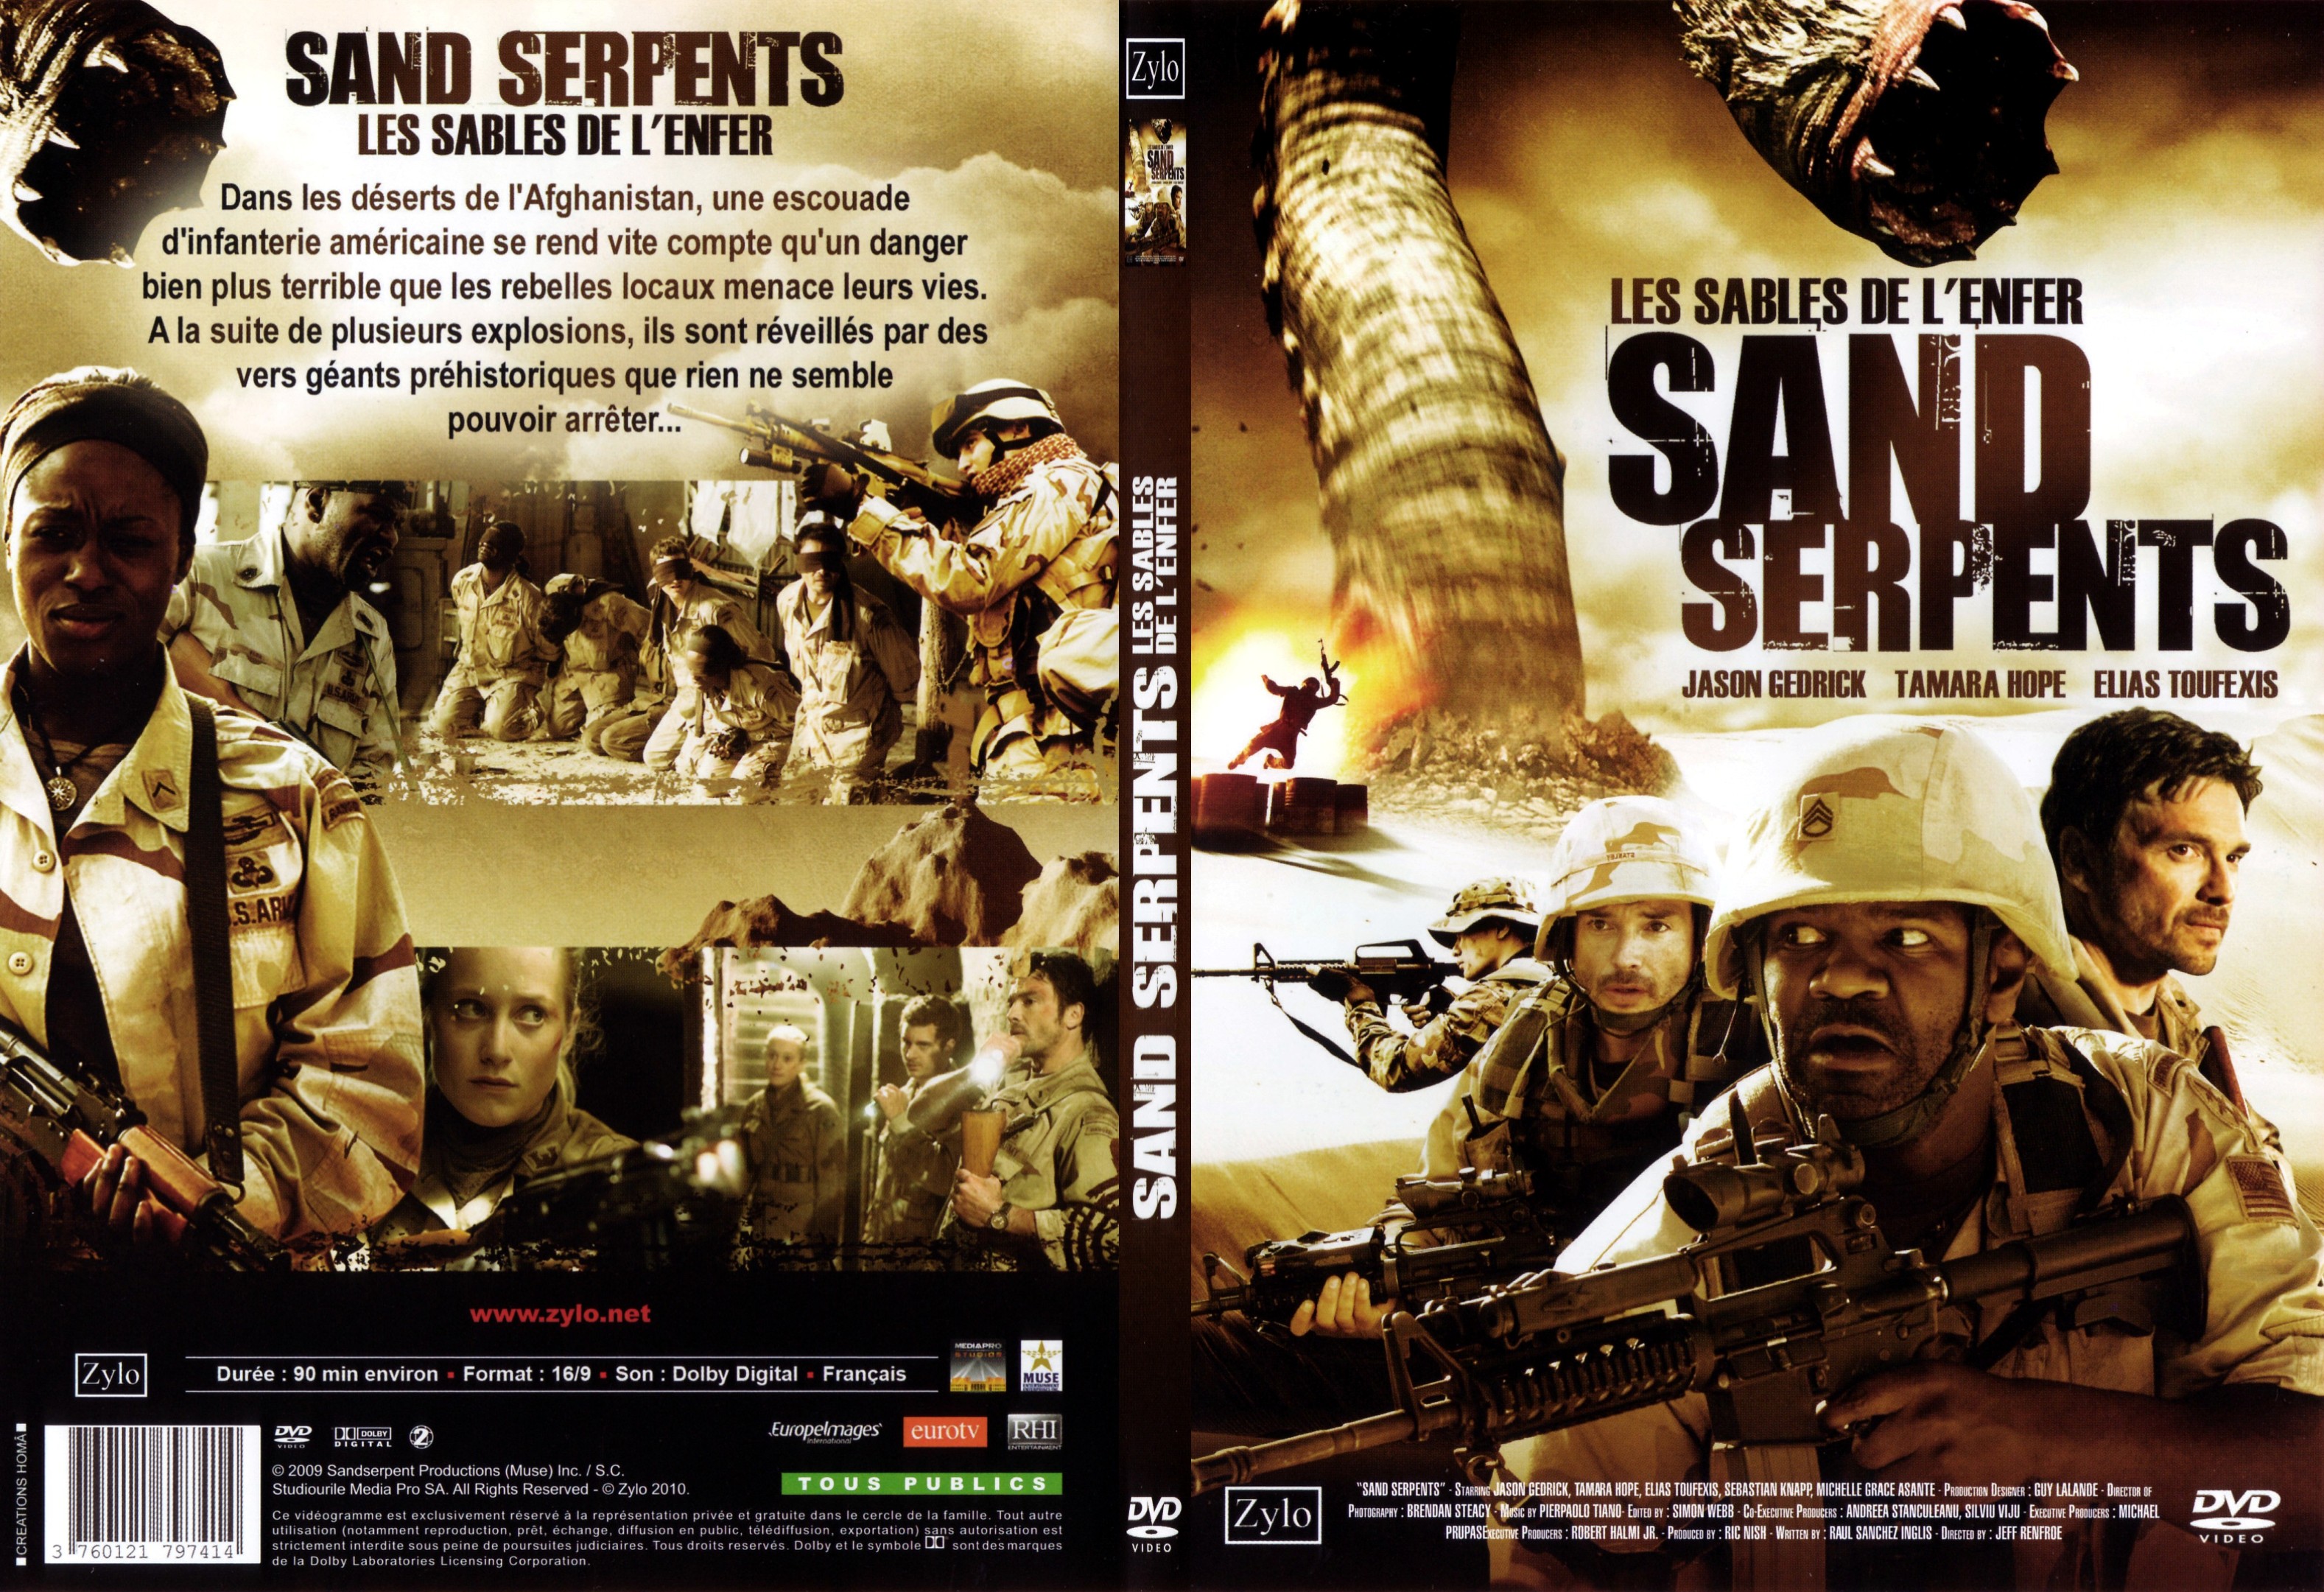 Jaquette DVD Sand serpents - les sables de l